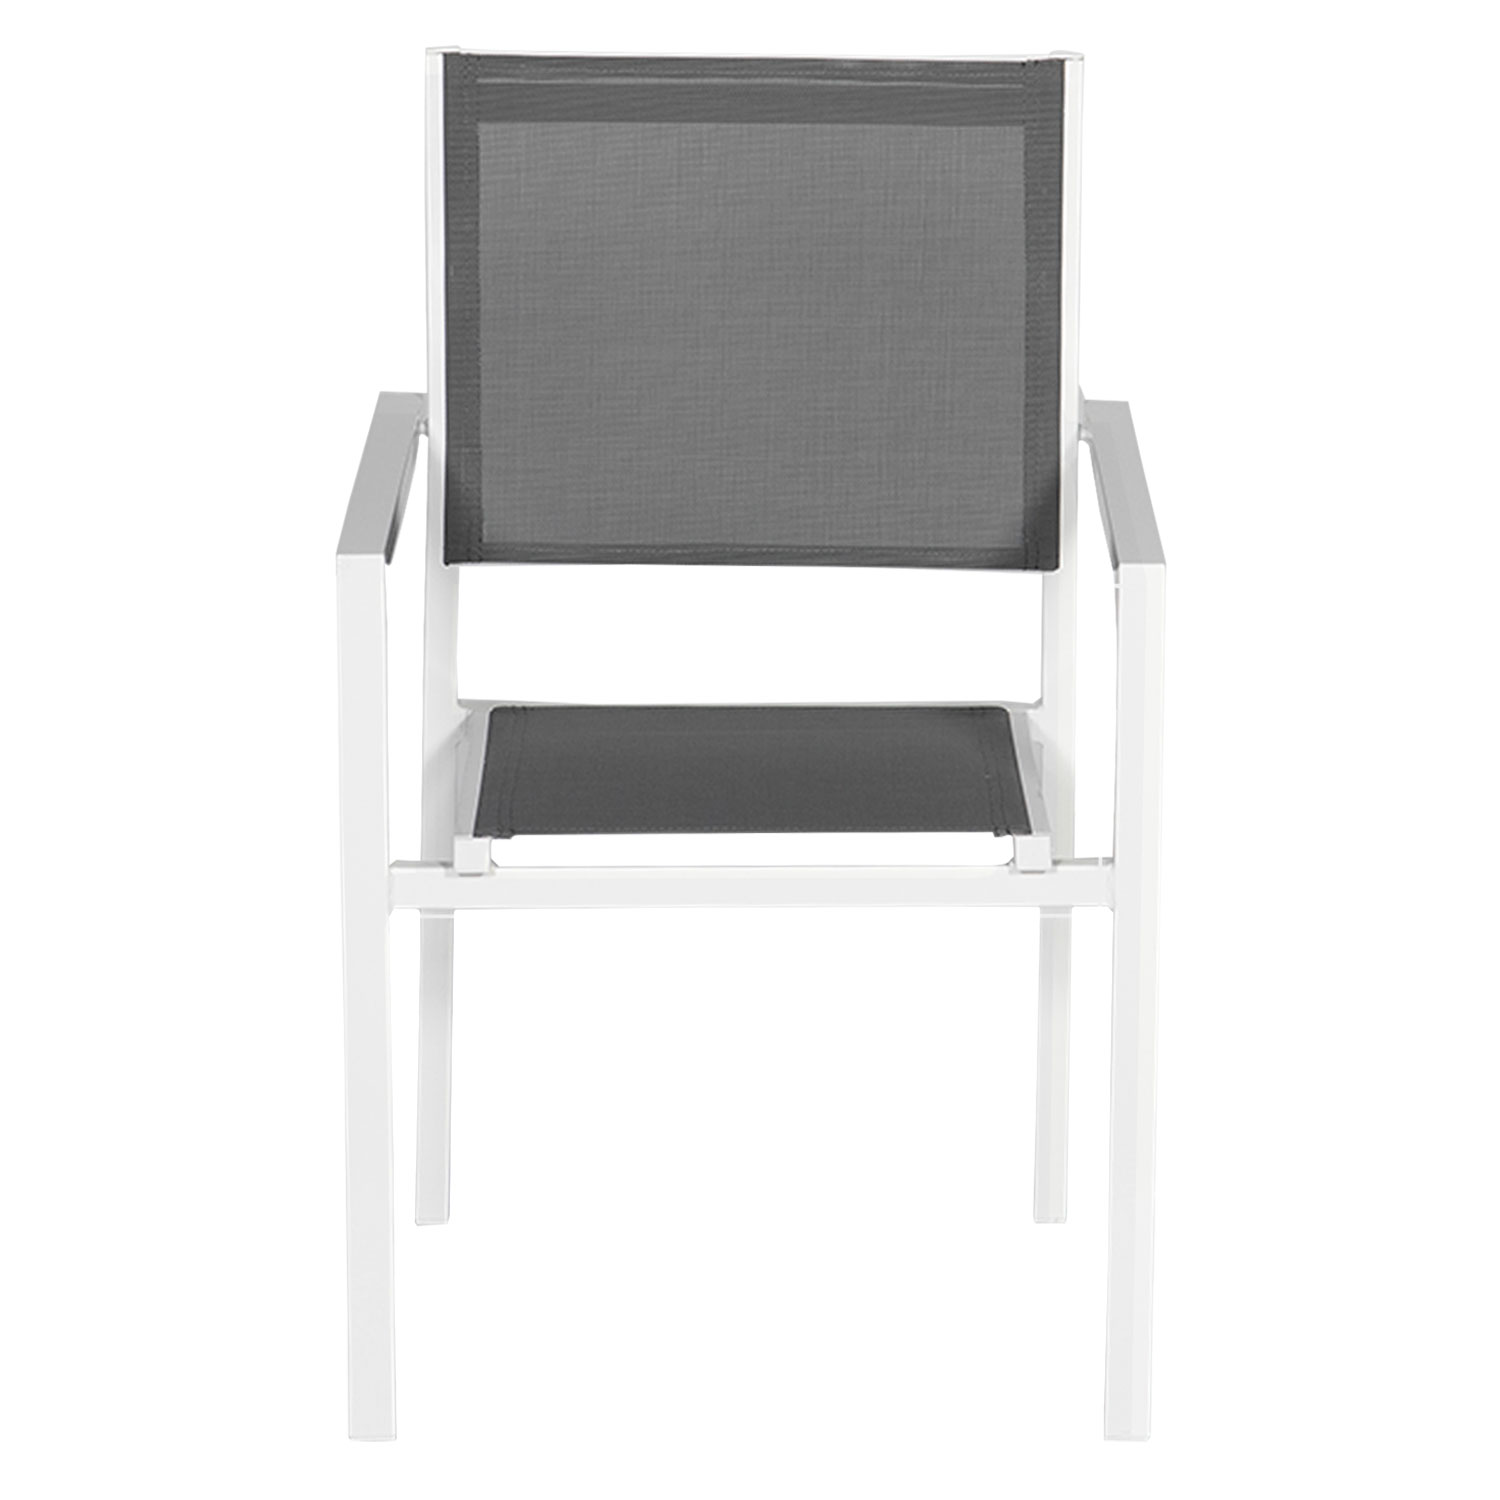 Lot de 4 chaises en aluminium blanc - textilène gris